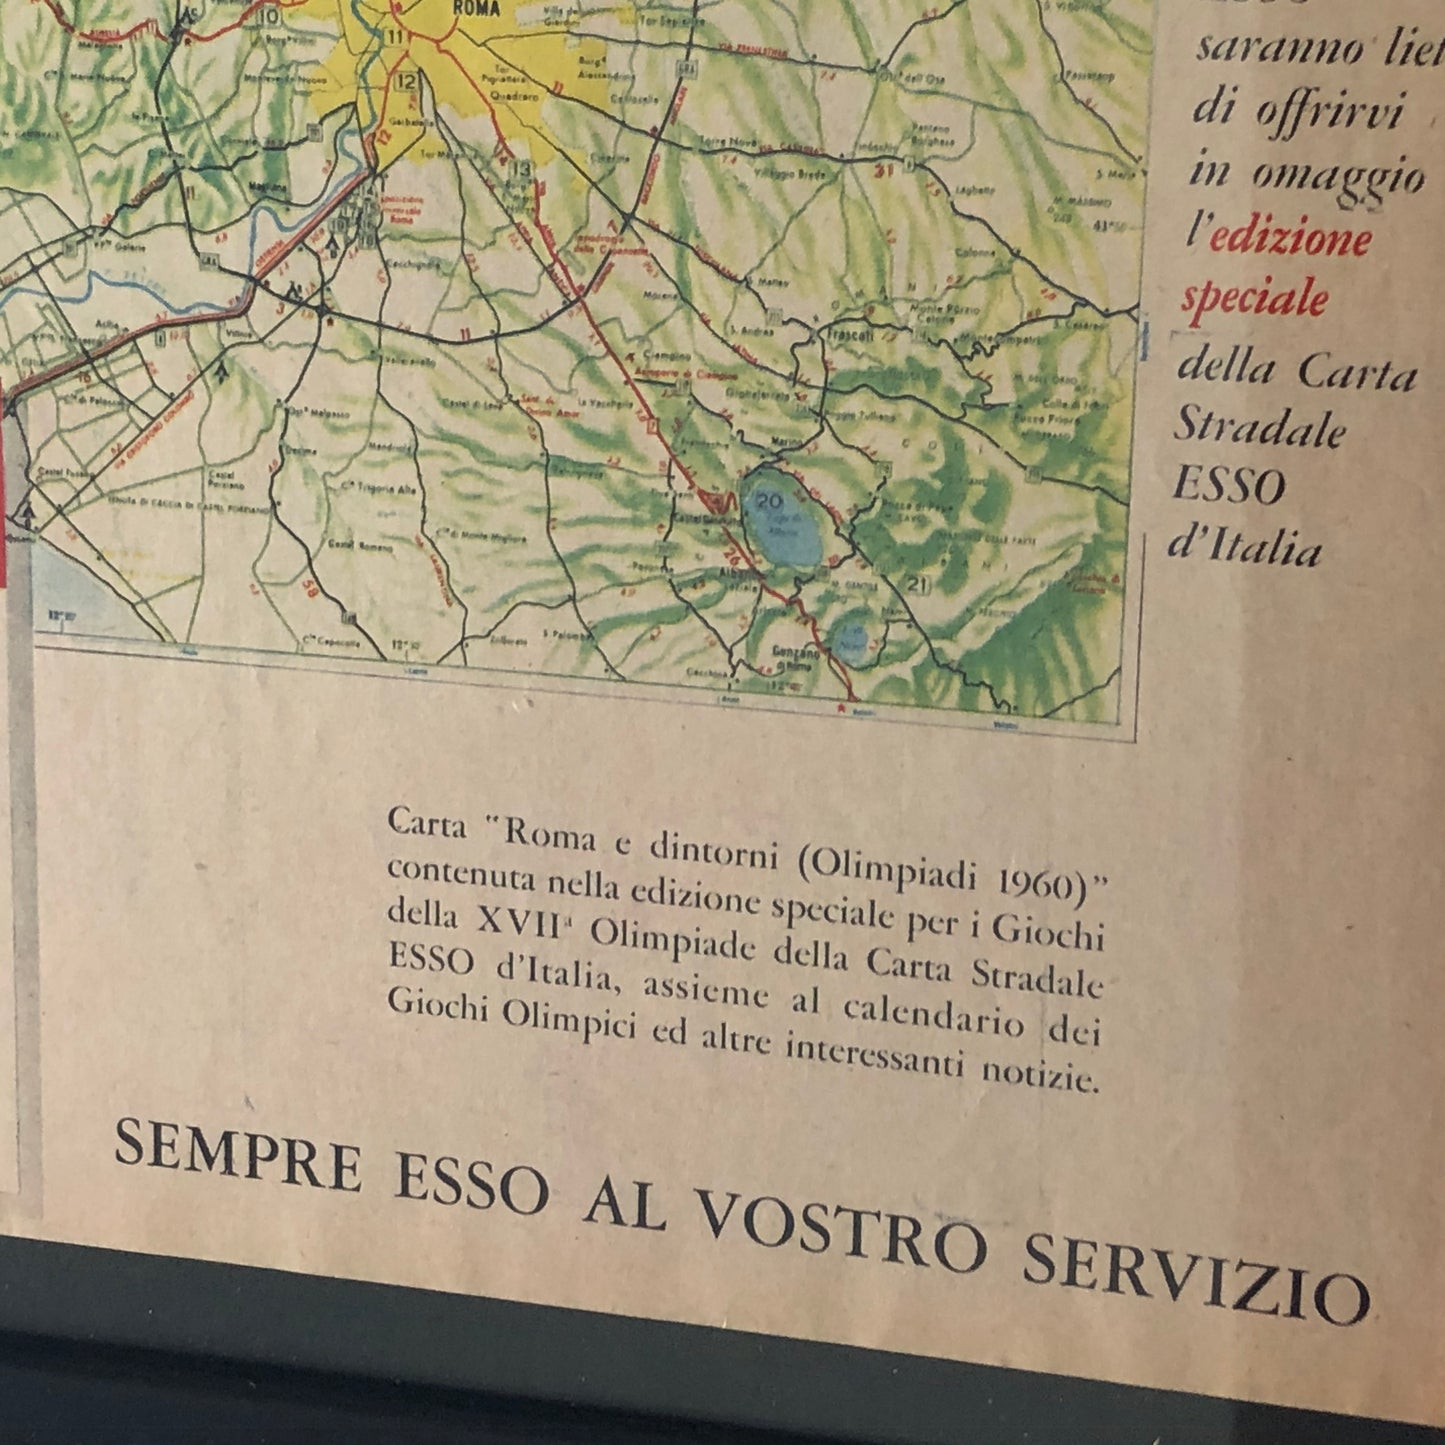 Esso, Pubblicità Anno 1960 Edizione Speciale Carta Stradale Esso di Roma